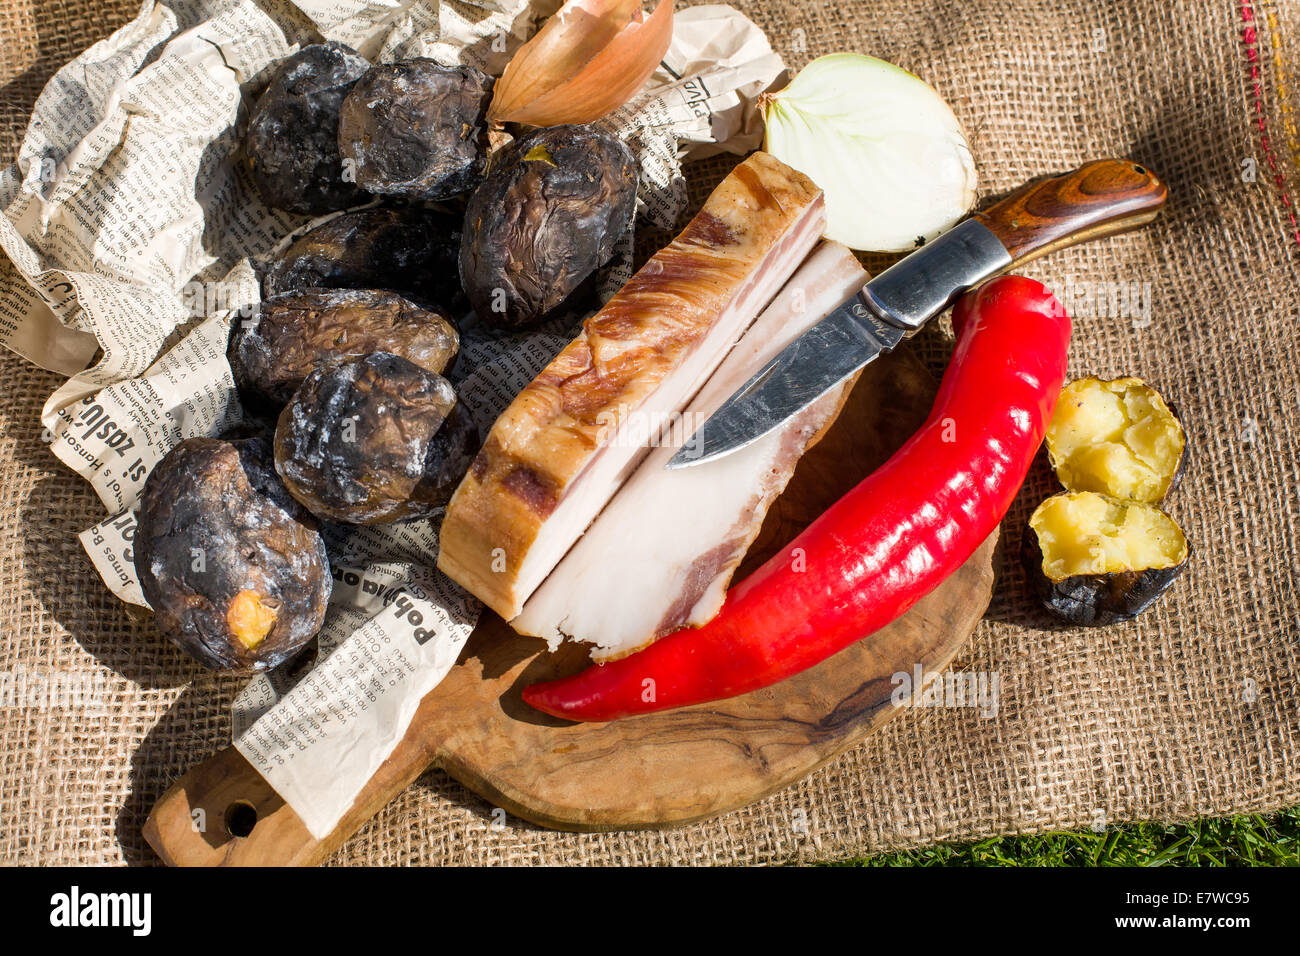 Bauern-Mittagessen - Speck, Kartoffeln in die Glut, Paprika und Zwiebeln gebacken Stockfoto